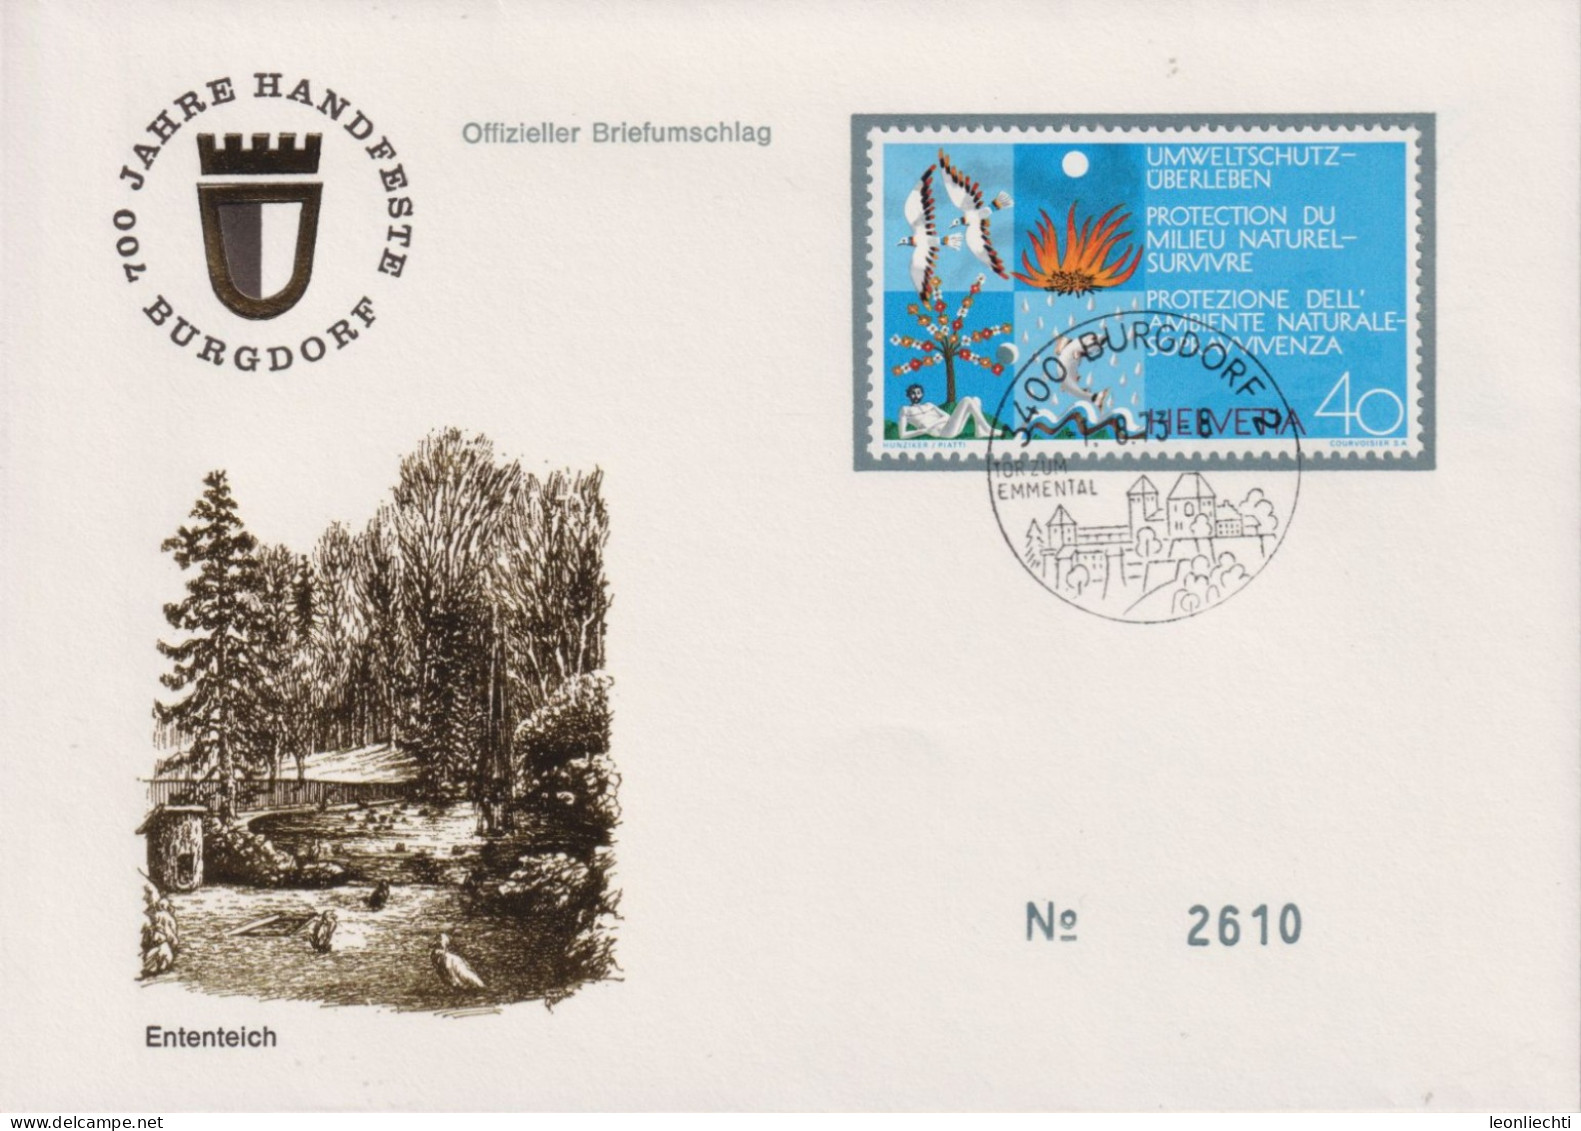 1972 Schweiz Brief, Zum:CH 519 Mi:CH: 978, Umweltschutz, 700 Jahre Handfeste Burgdorf, Ententeich, N°. 2610 - Covers & Documents